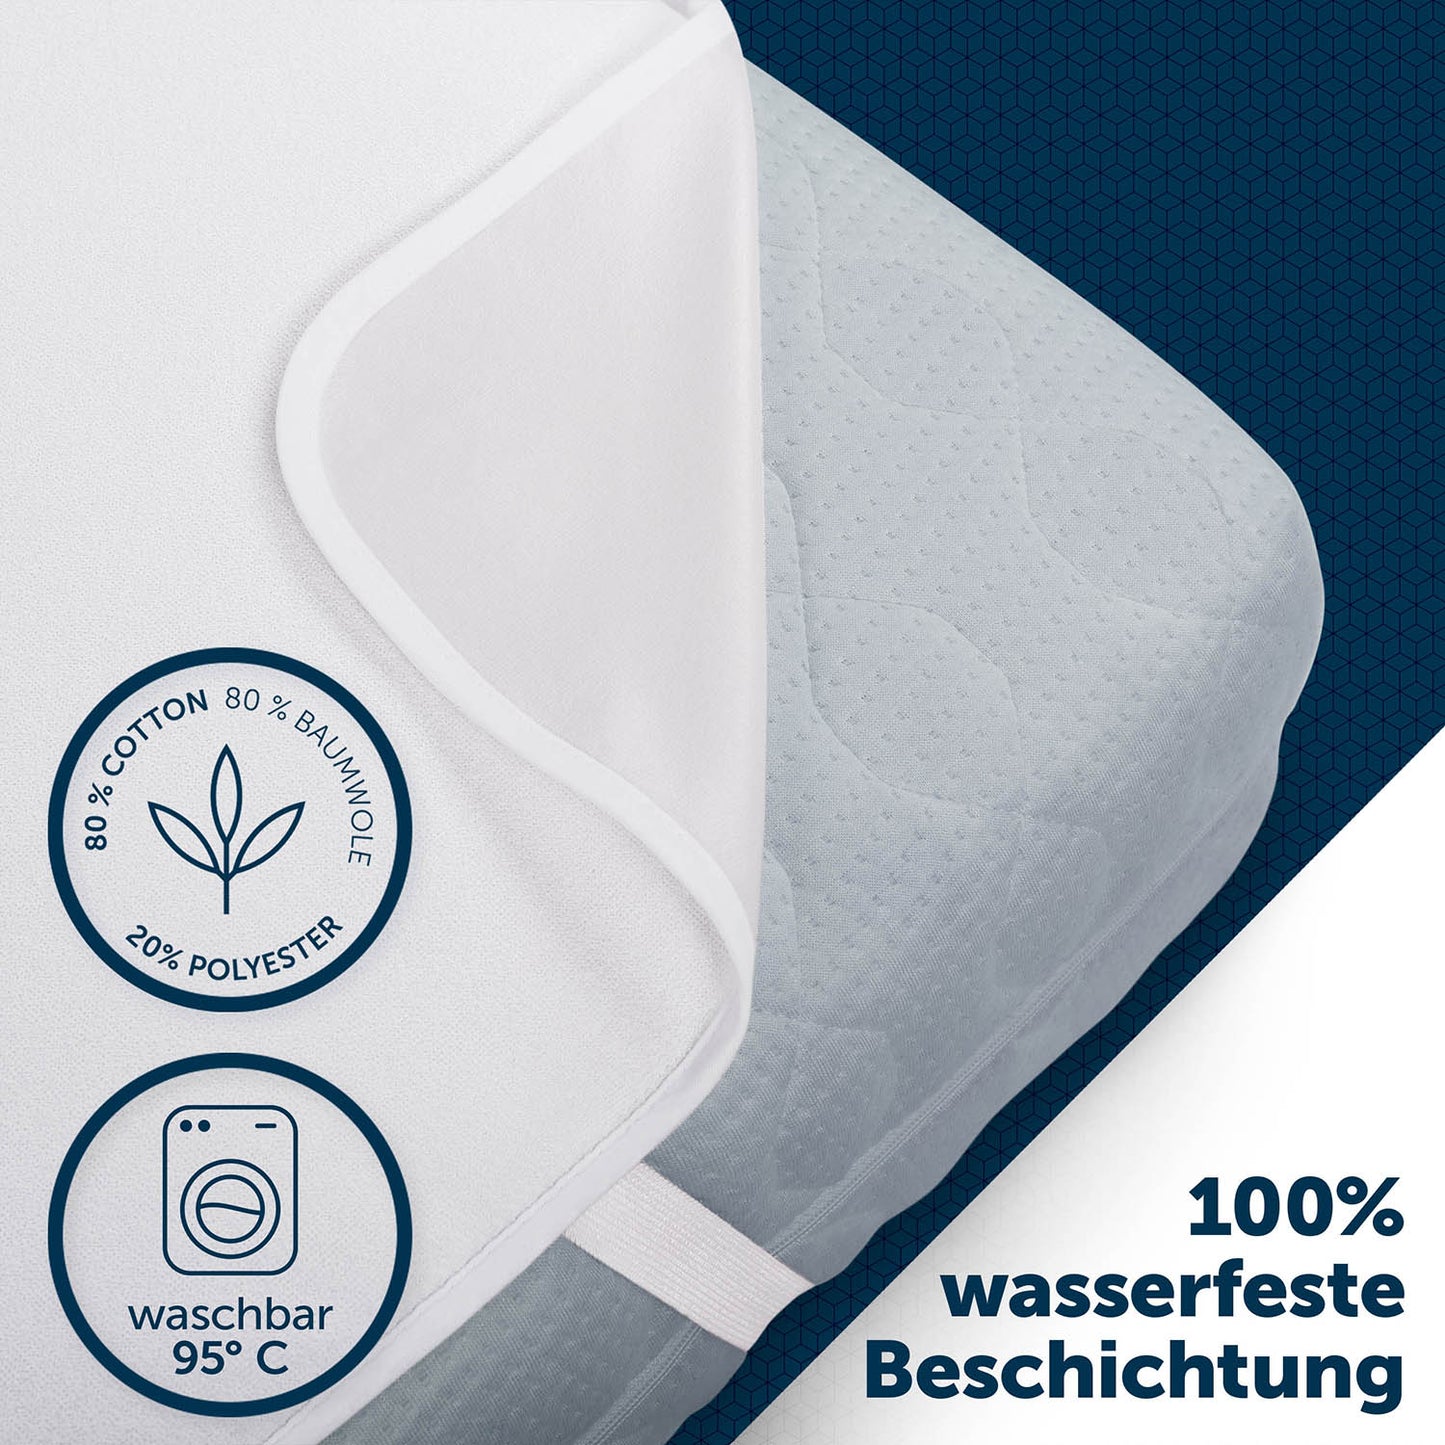 Ecke eines weißen Matratzenschoners mit Etikett, das 80% Baumwolle und 20% Polyester, sowie 100% wasserfeste Beschichtung angibt, auf einer blauen Matratze.